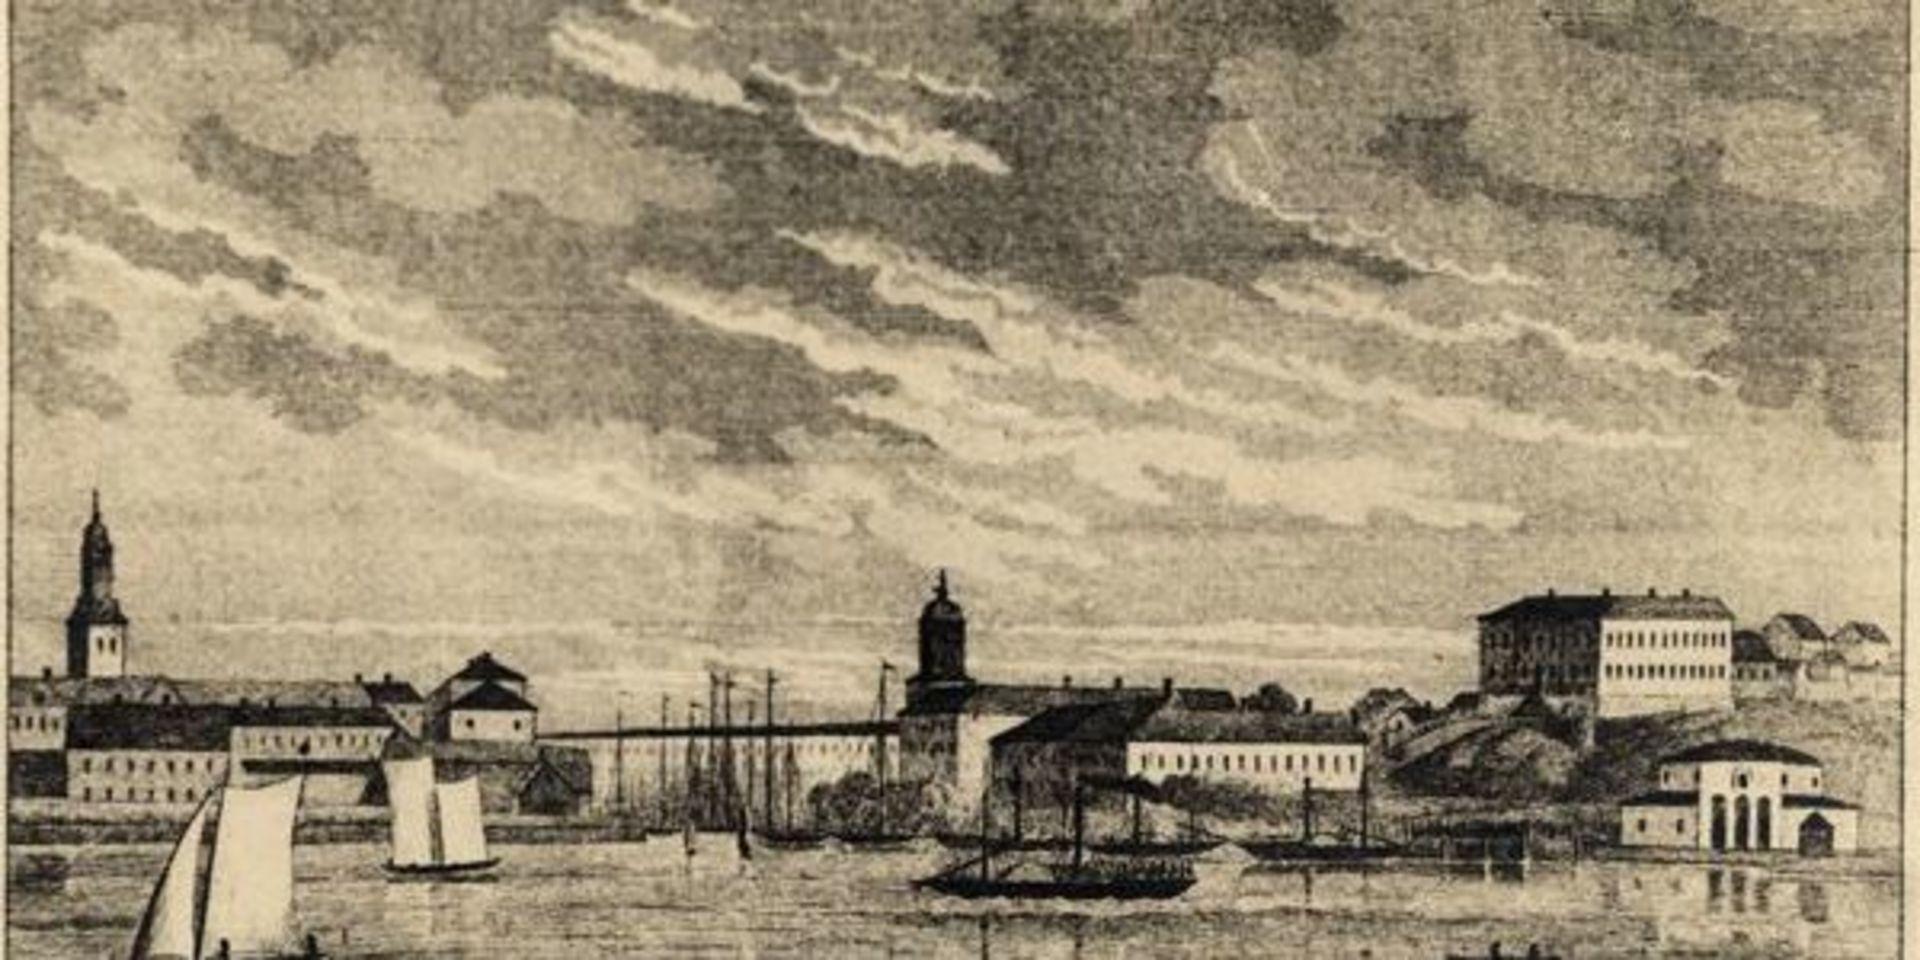 Skeppsbron i mitten av 1800-talet. Ddet runda badhuset syns längst till höger. 